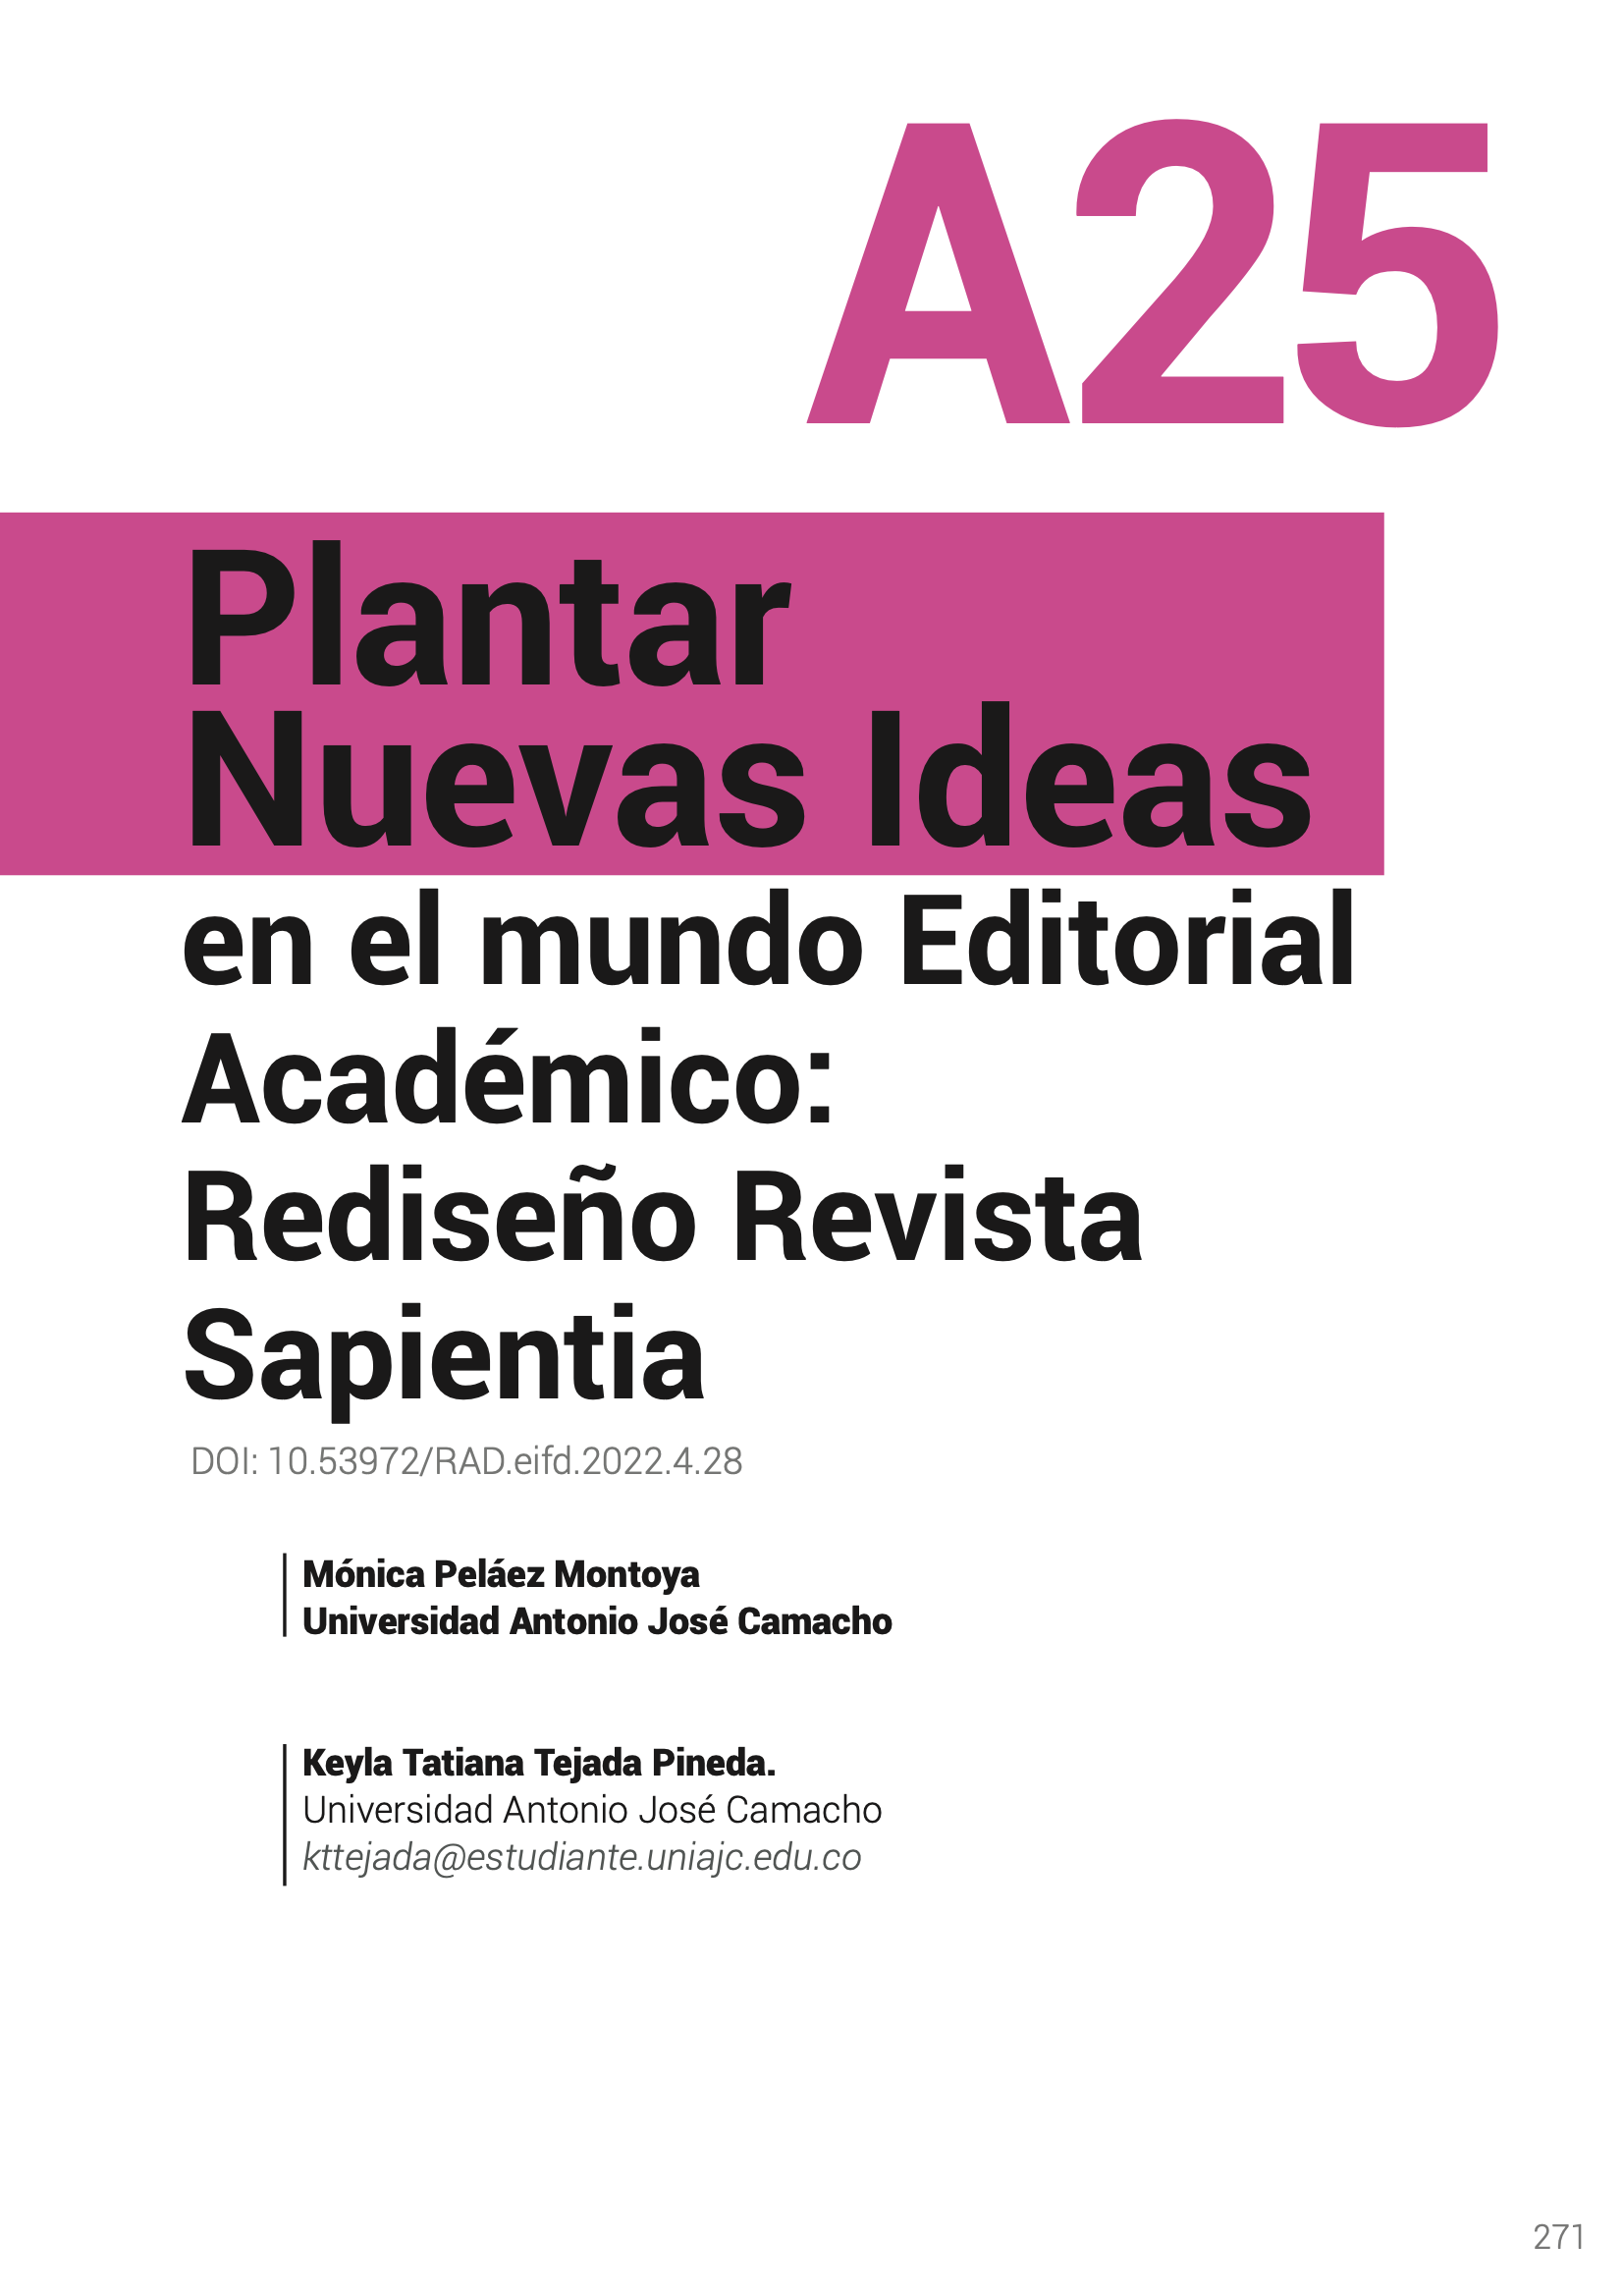 Plantar Nuevas Ideas en el mundo Editorial Académico